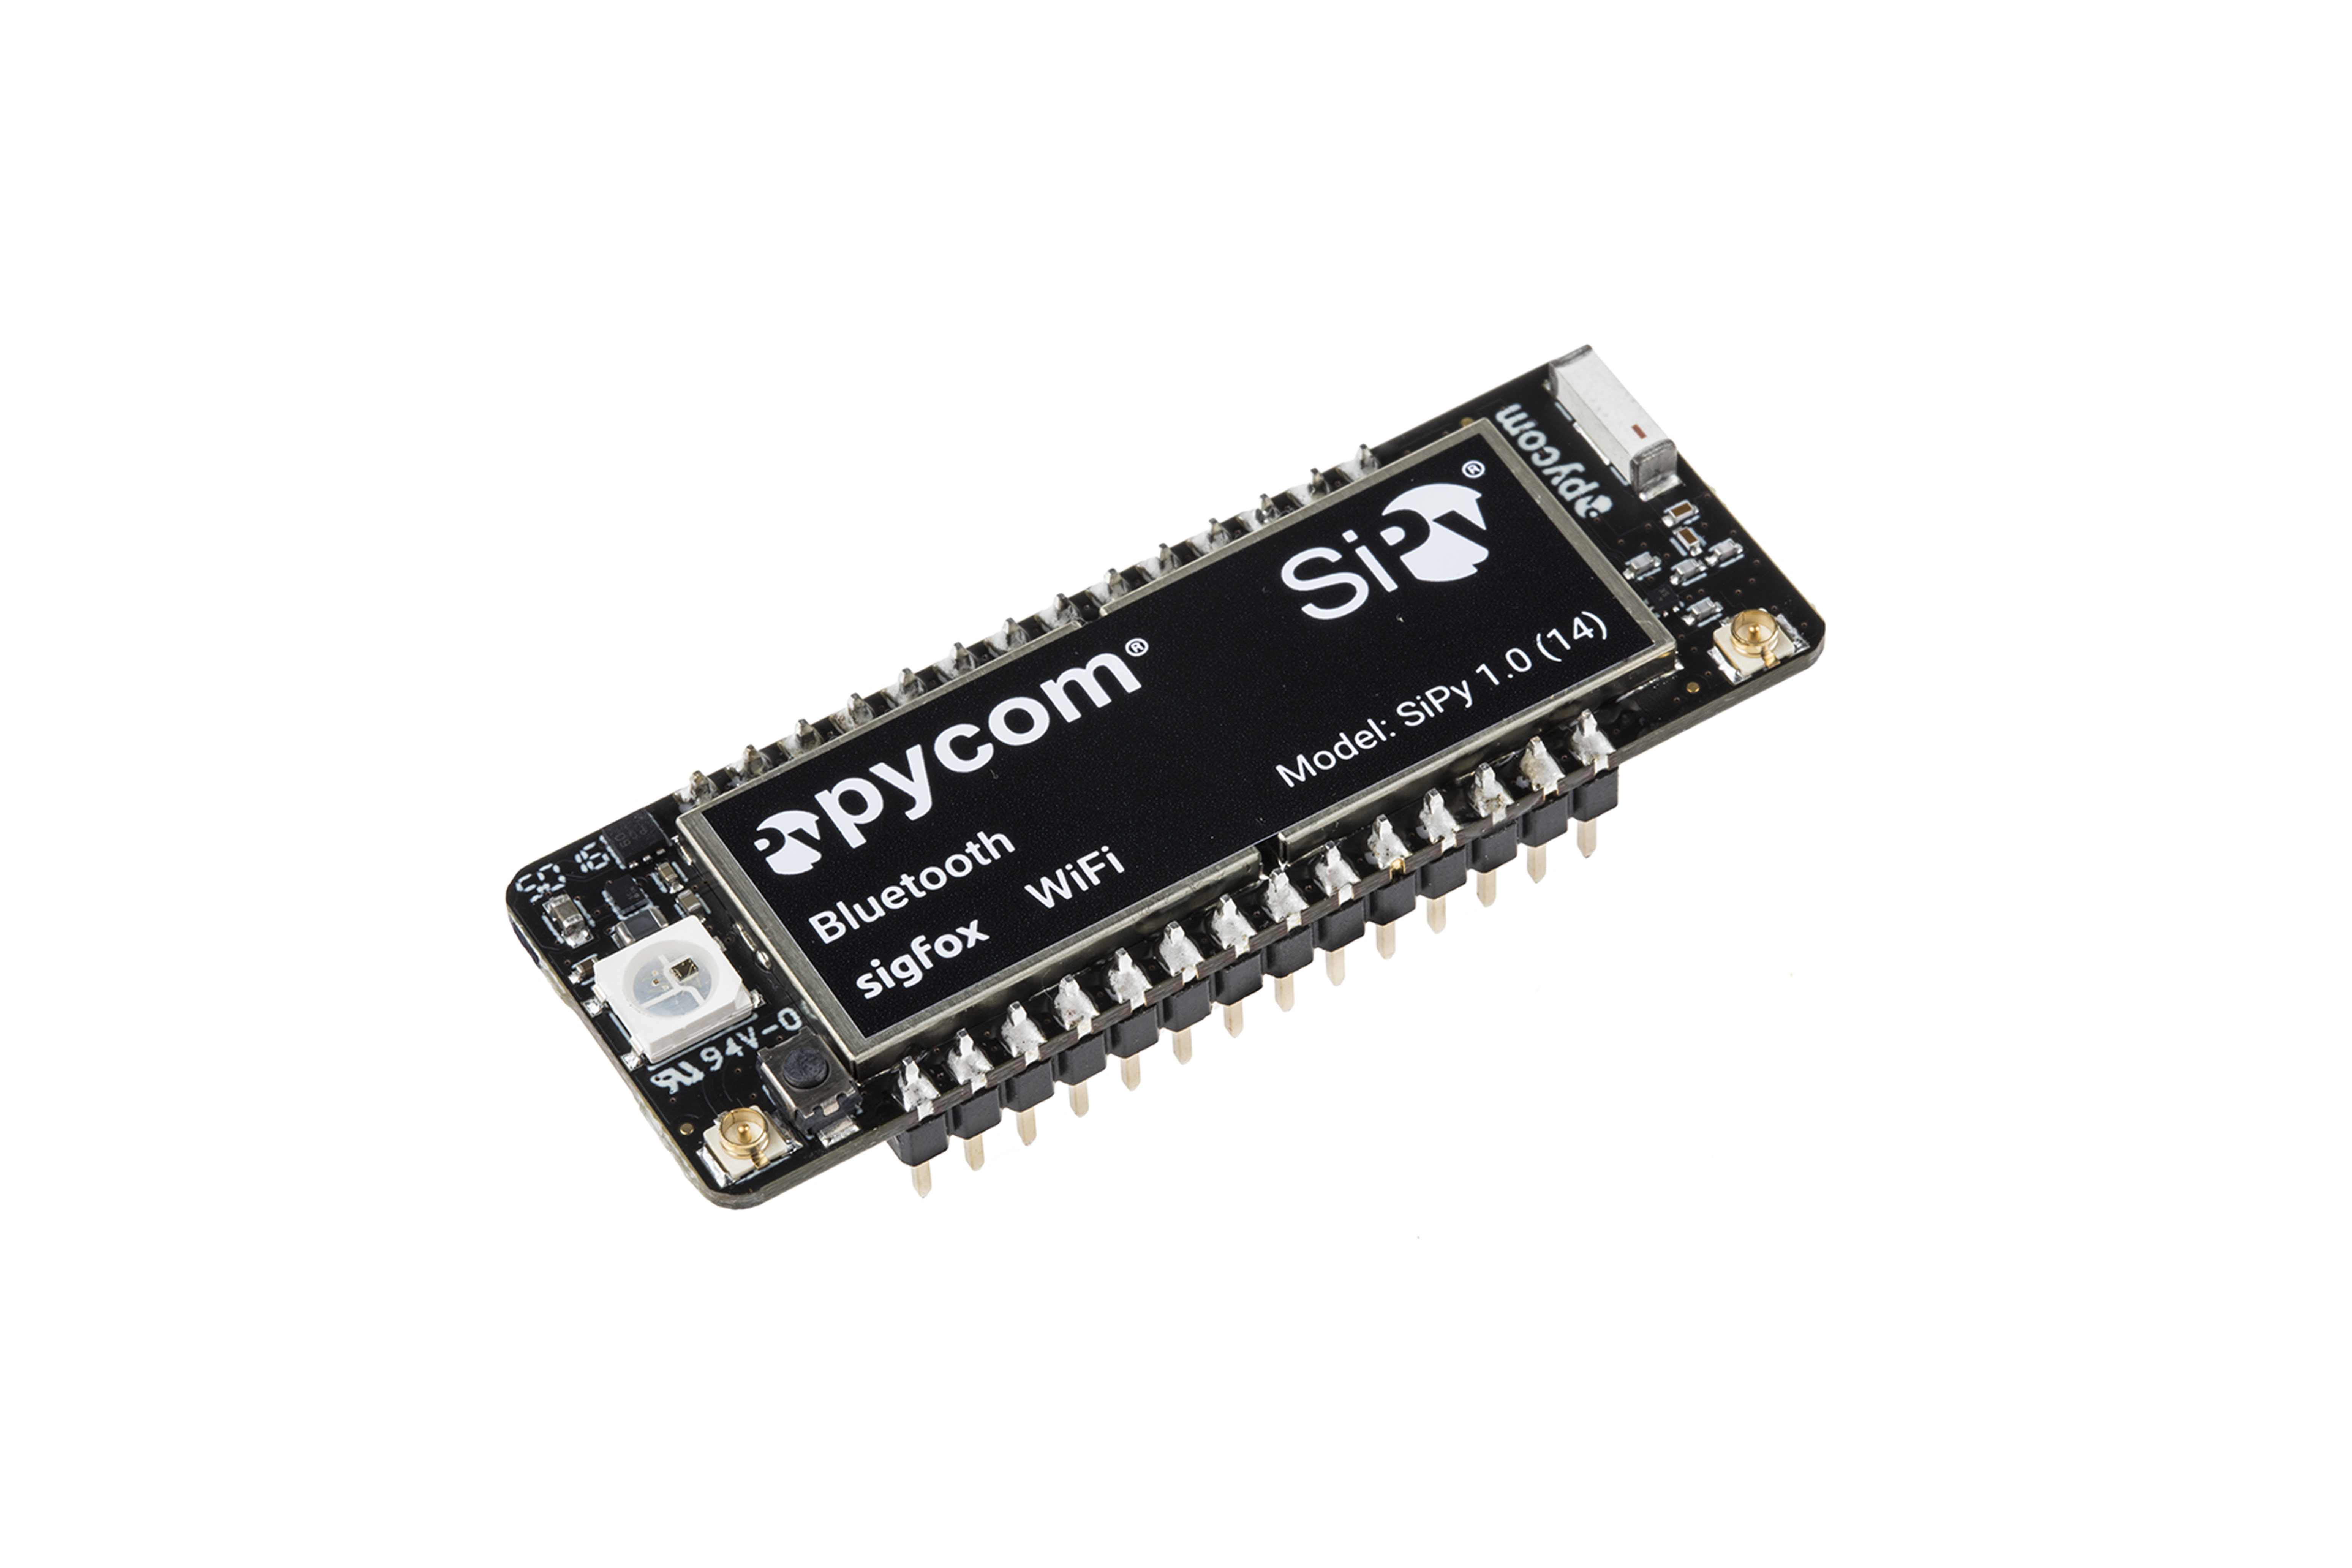 Pycom Sipy Rcz1 & Rcz3 - (Sigfox, WiFi, Ble)